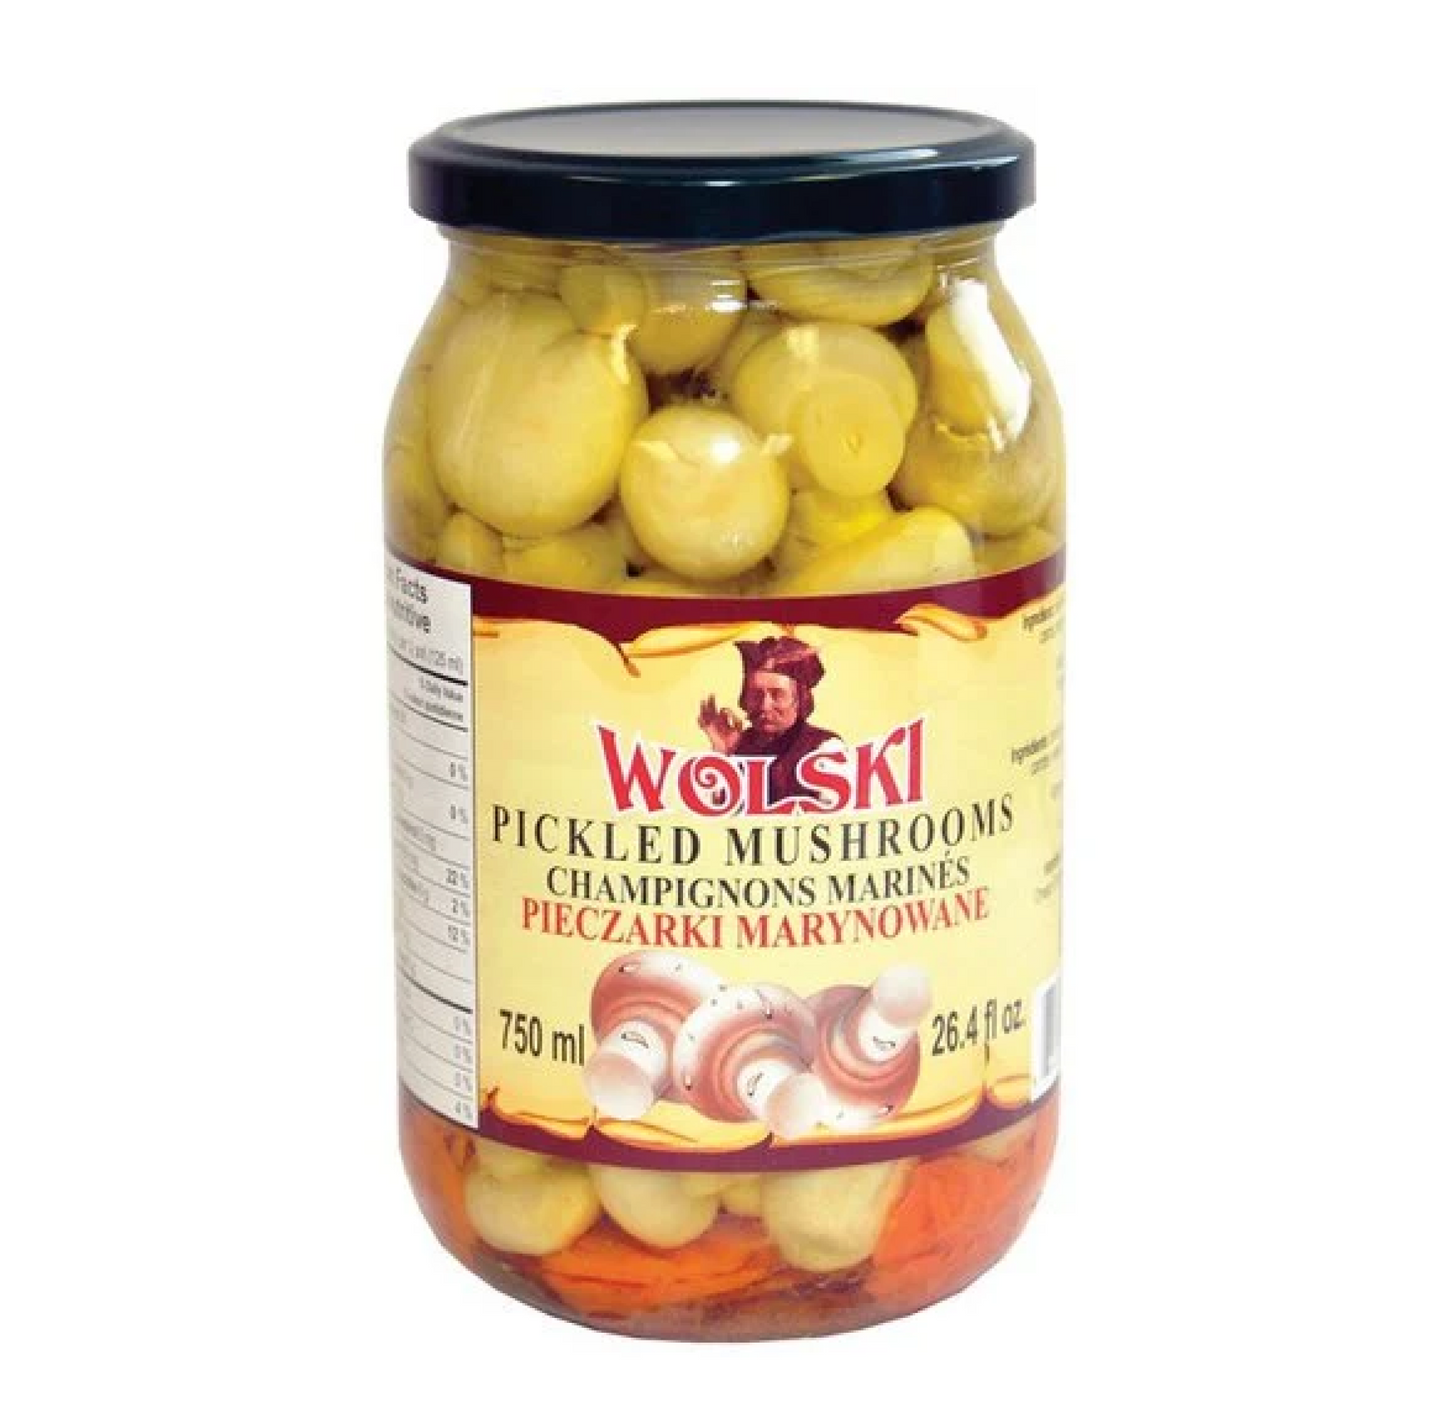 Wolski Pickled Mushrooms 750ml